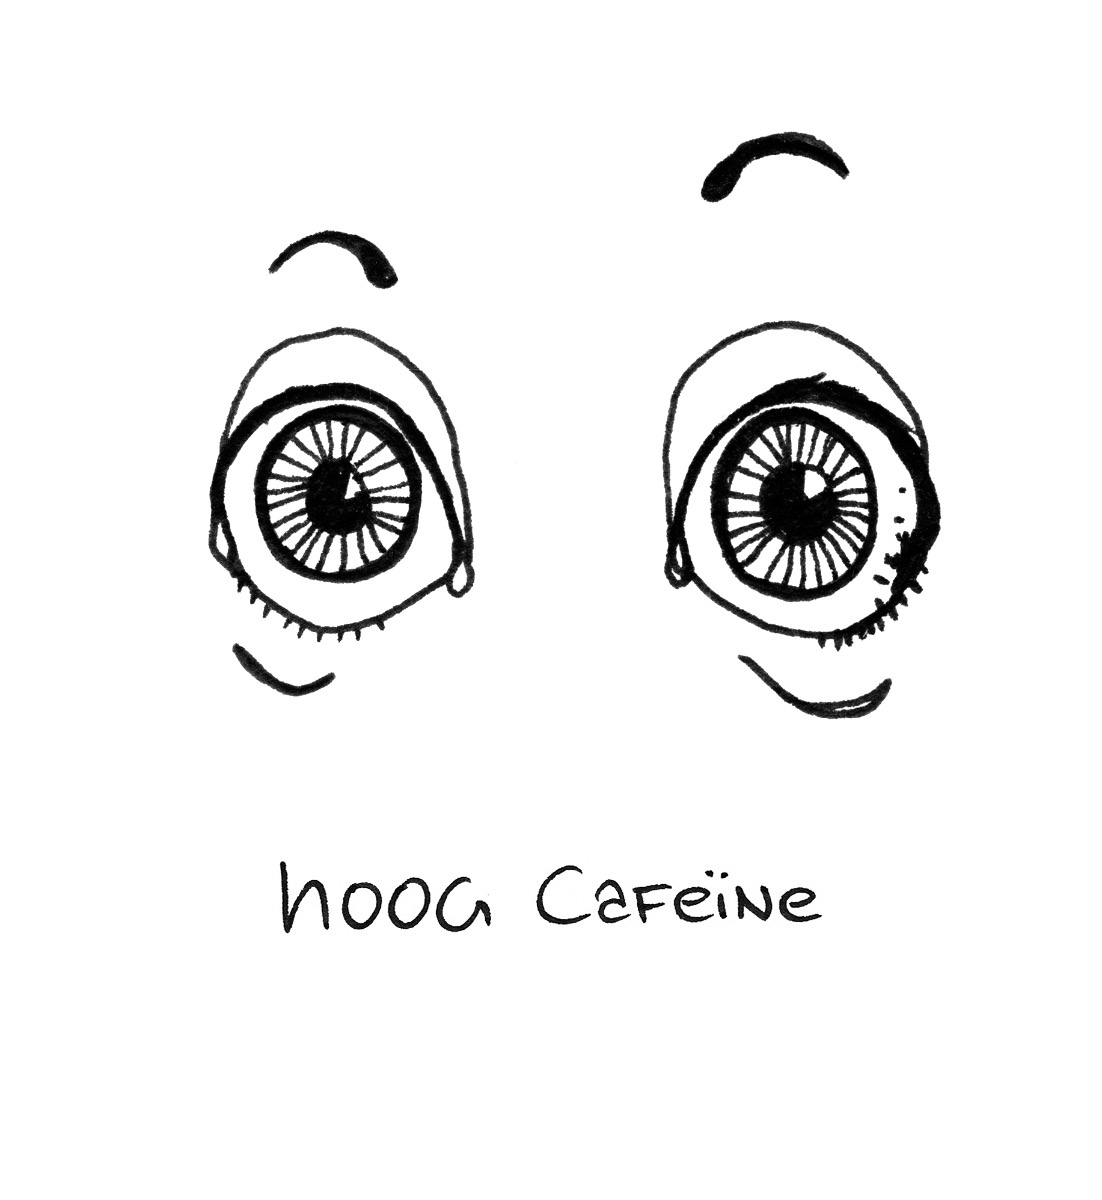 cafeine